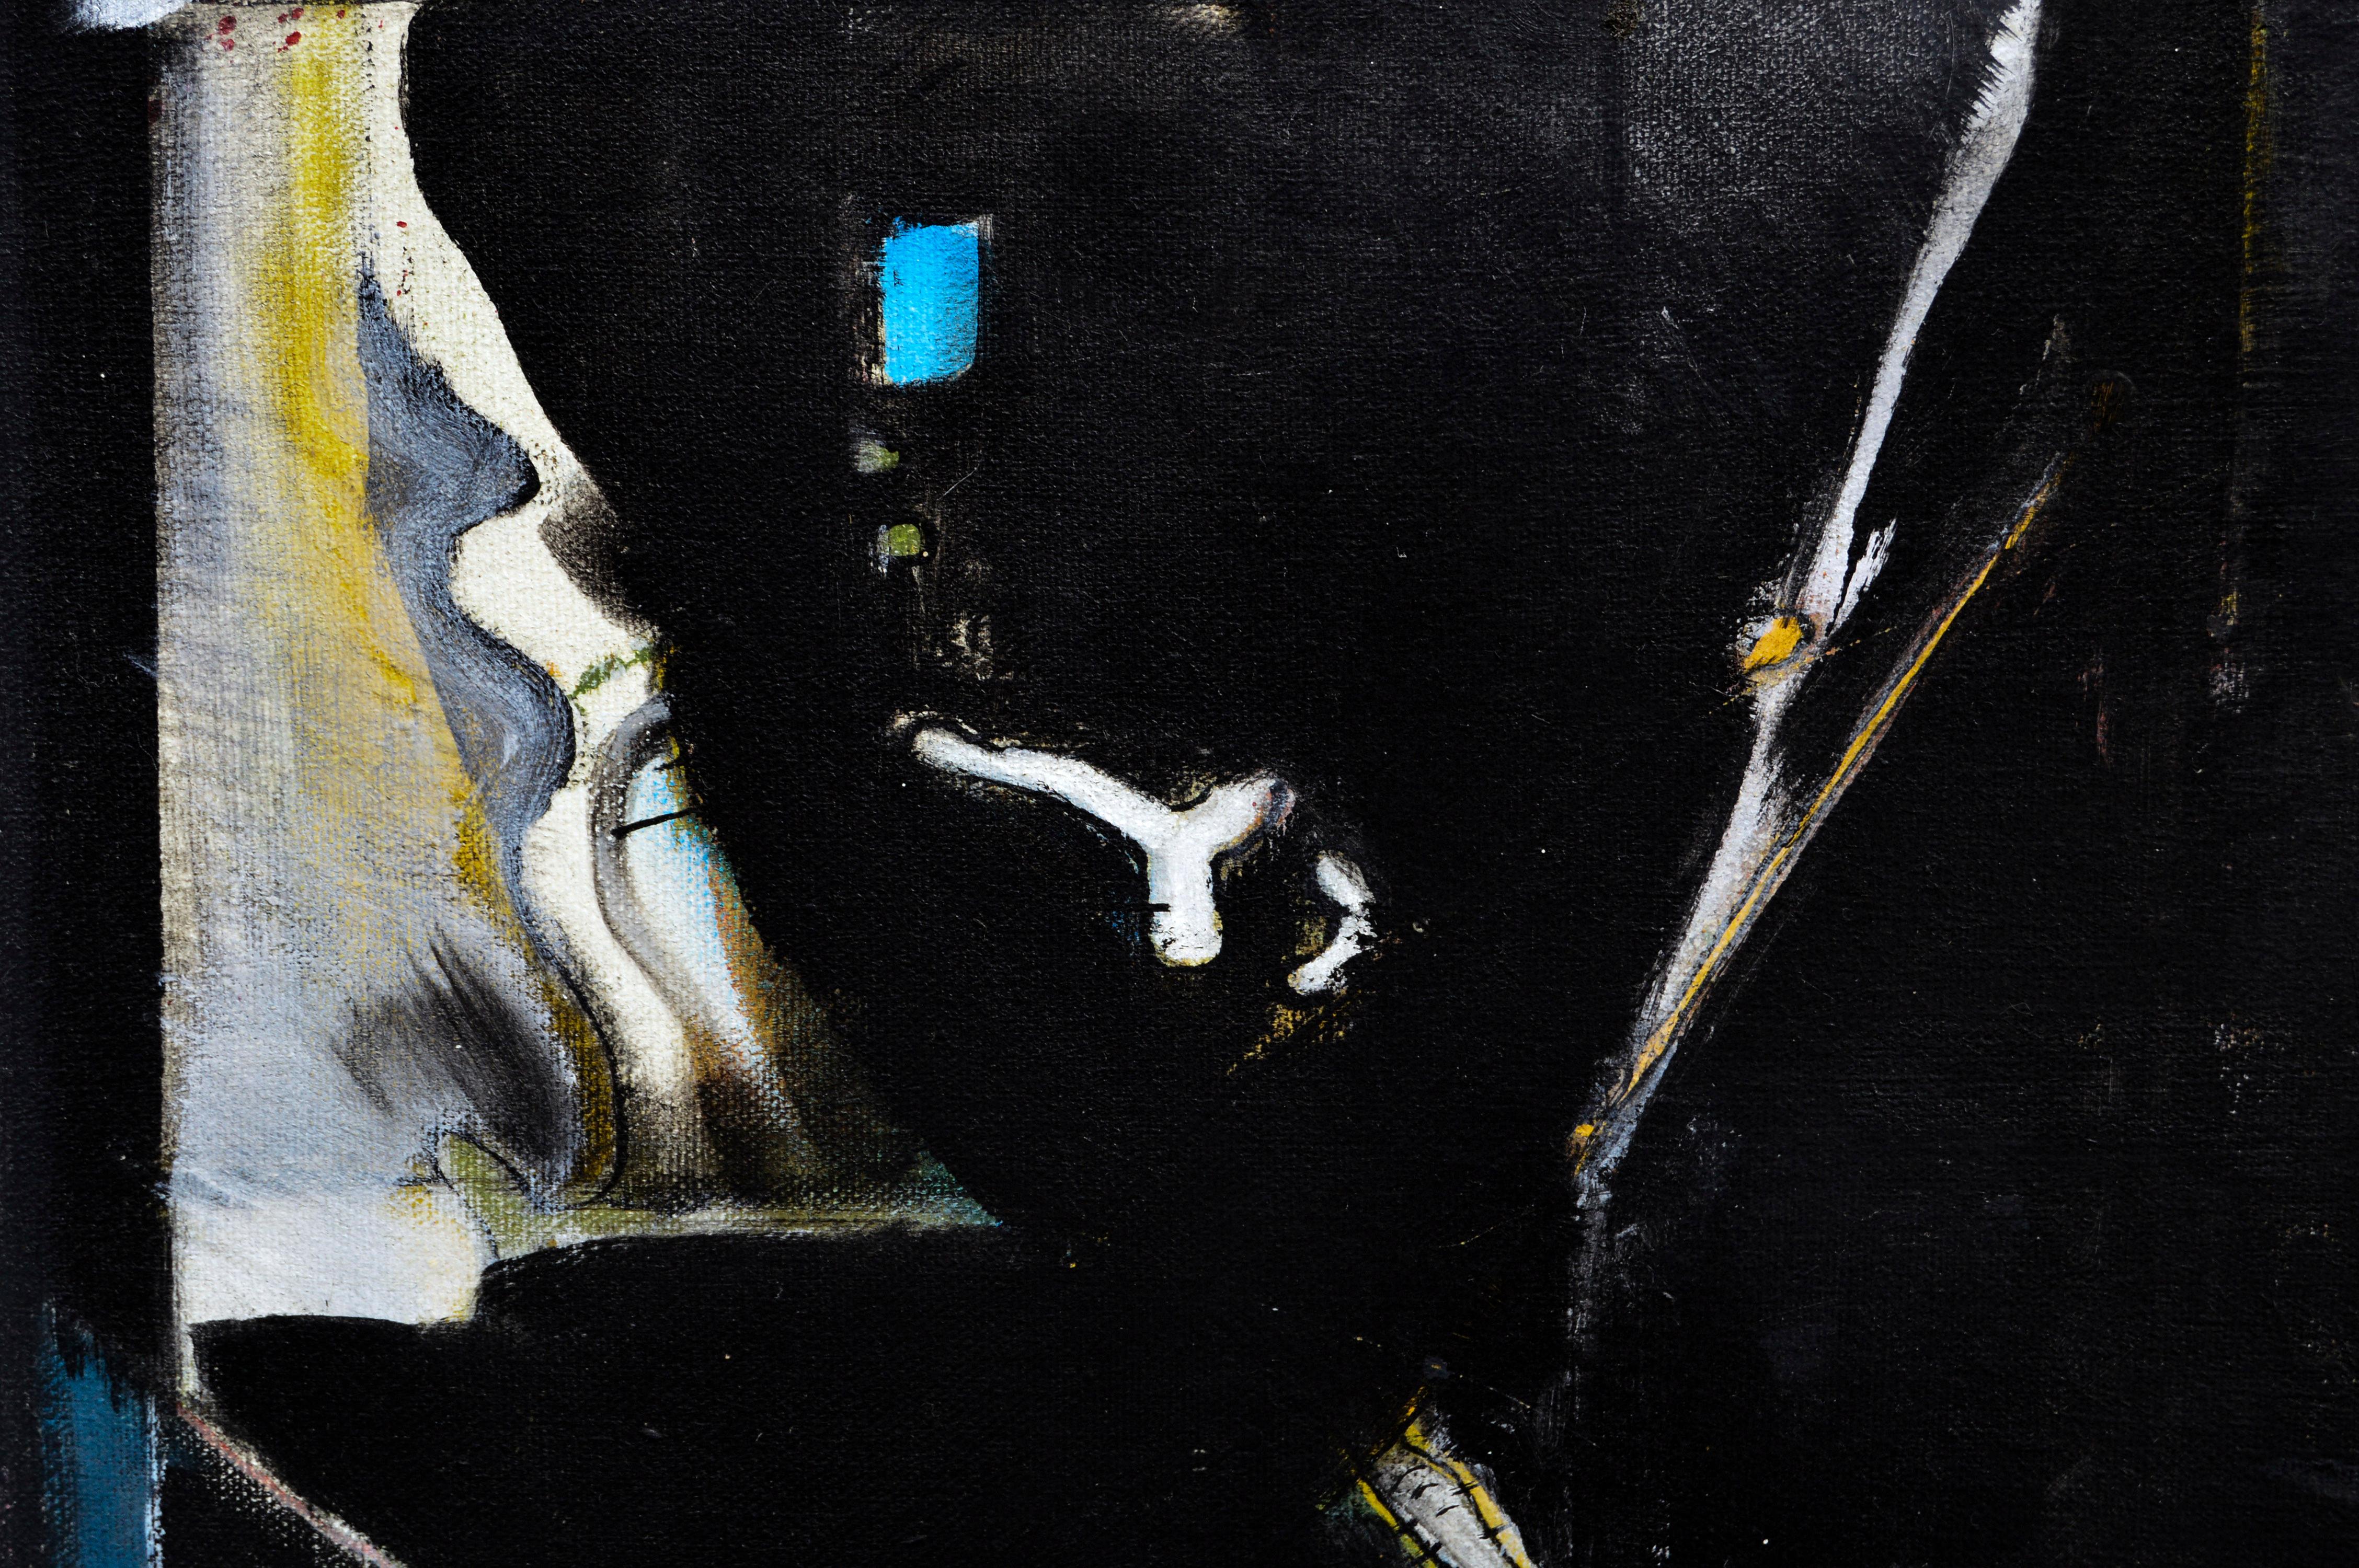 Abstrakt-expressionistische Komposition auf Schwarz  (Abstrakter Expressionismus), Painting, von Ross H. Pollette